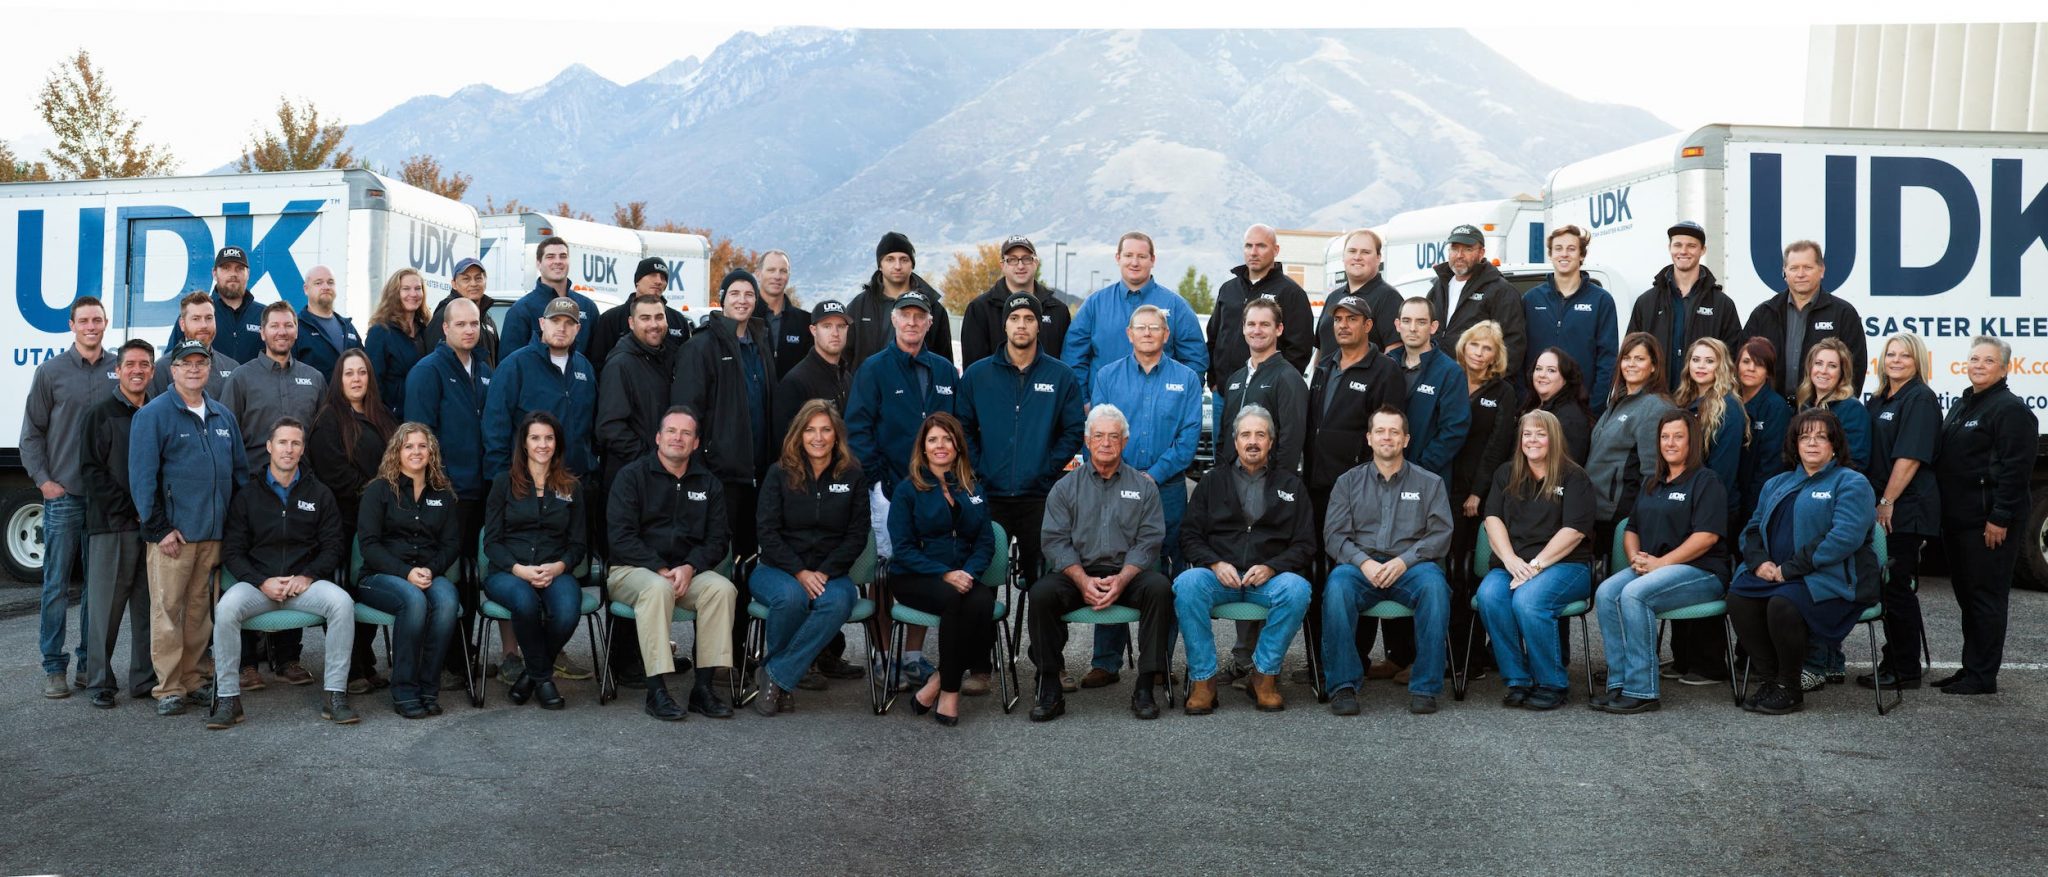 UDK Team | Utah Disaster Kleenup